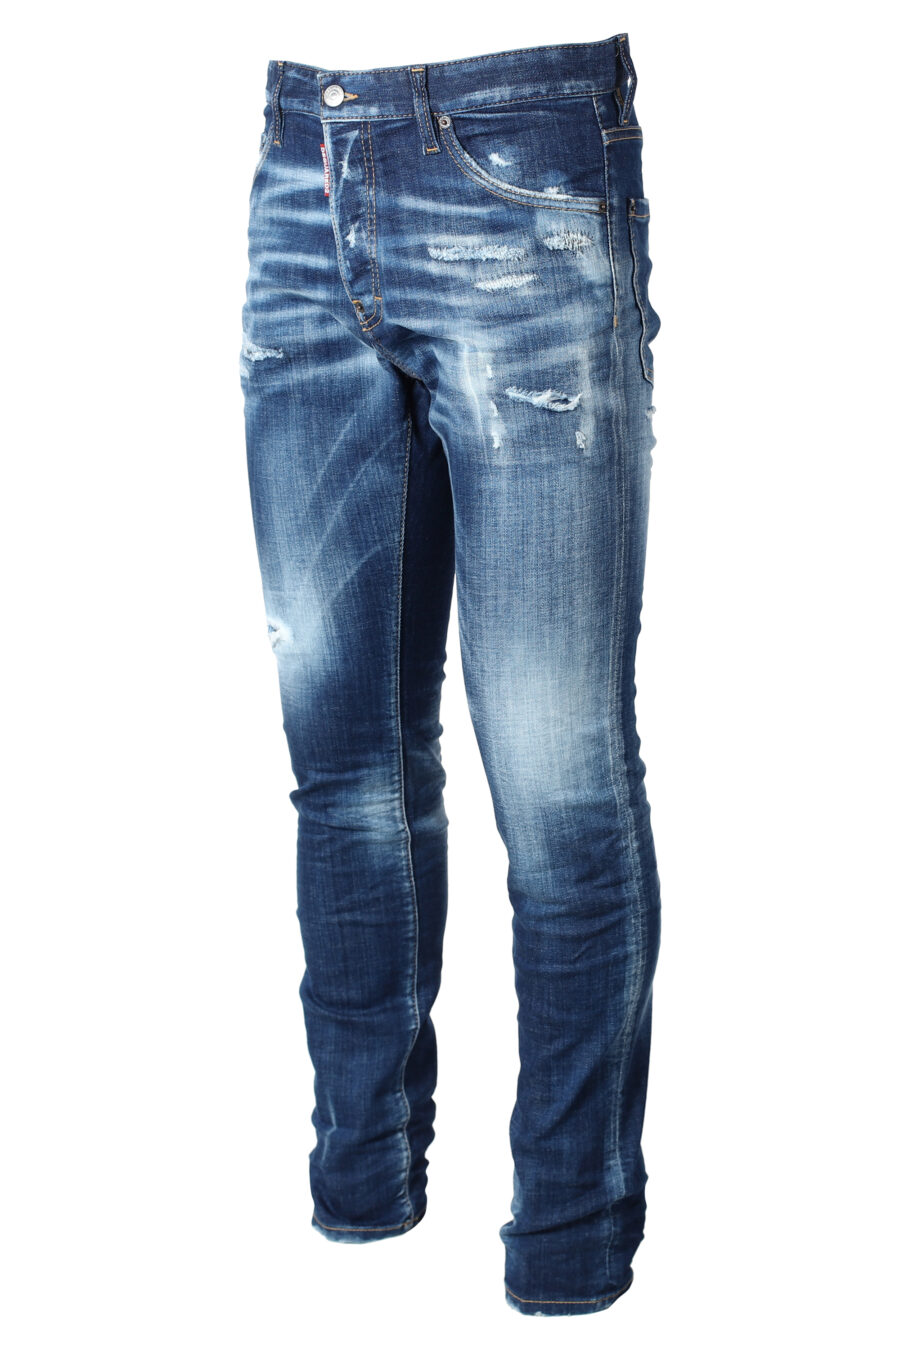 Pantalón vaquero azul desgastado "cool guy jean" - IMG 9873